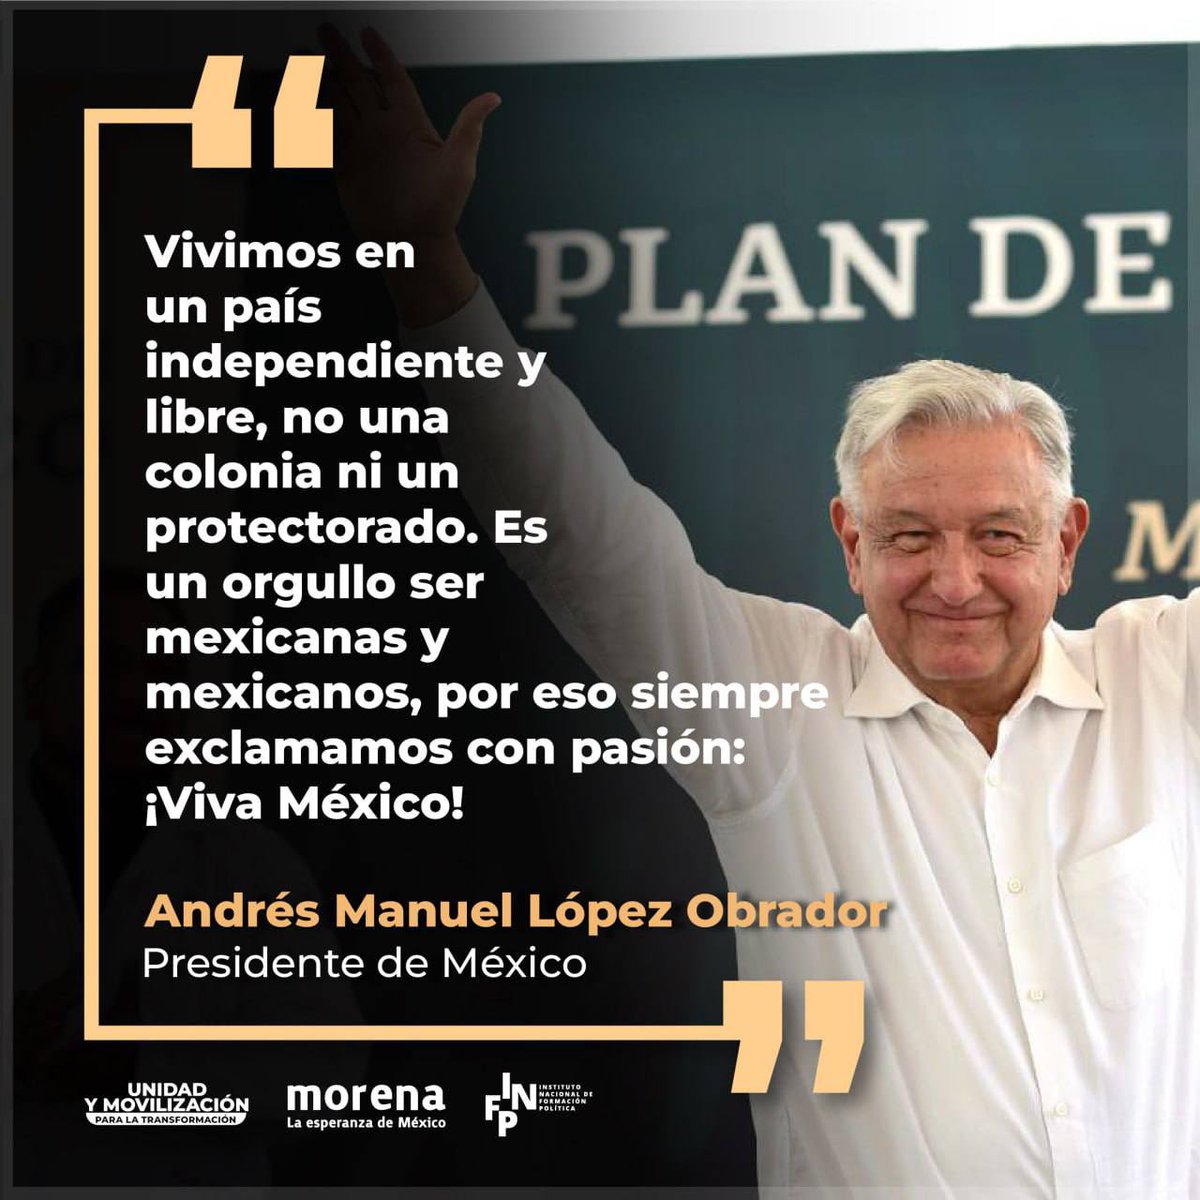 ¡Es un honor estar con Obrador! El gobierno de la 4T encabezado por el presidente @lopezobrador_ ha regresado la dignidad al pueblo de México, hoy somos una nación libre, independiente y soberana. Nunca más seremos una colonia, ni un protectorado.